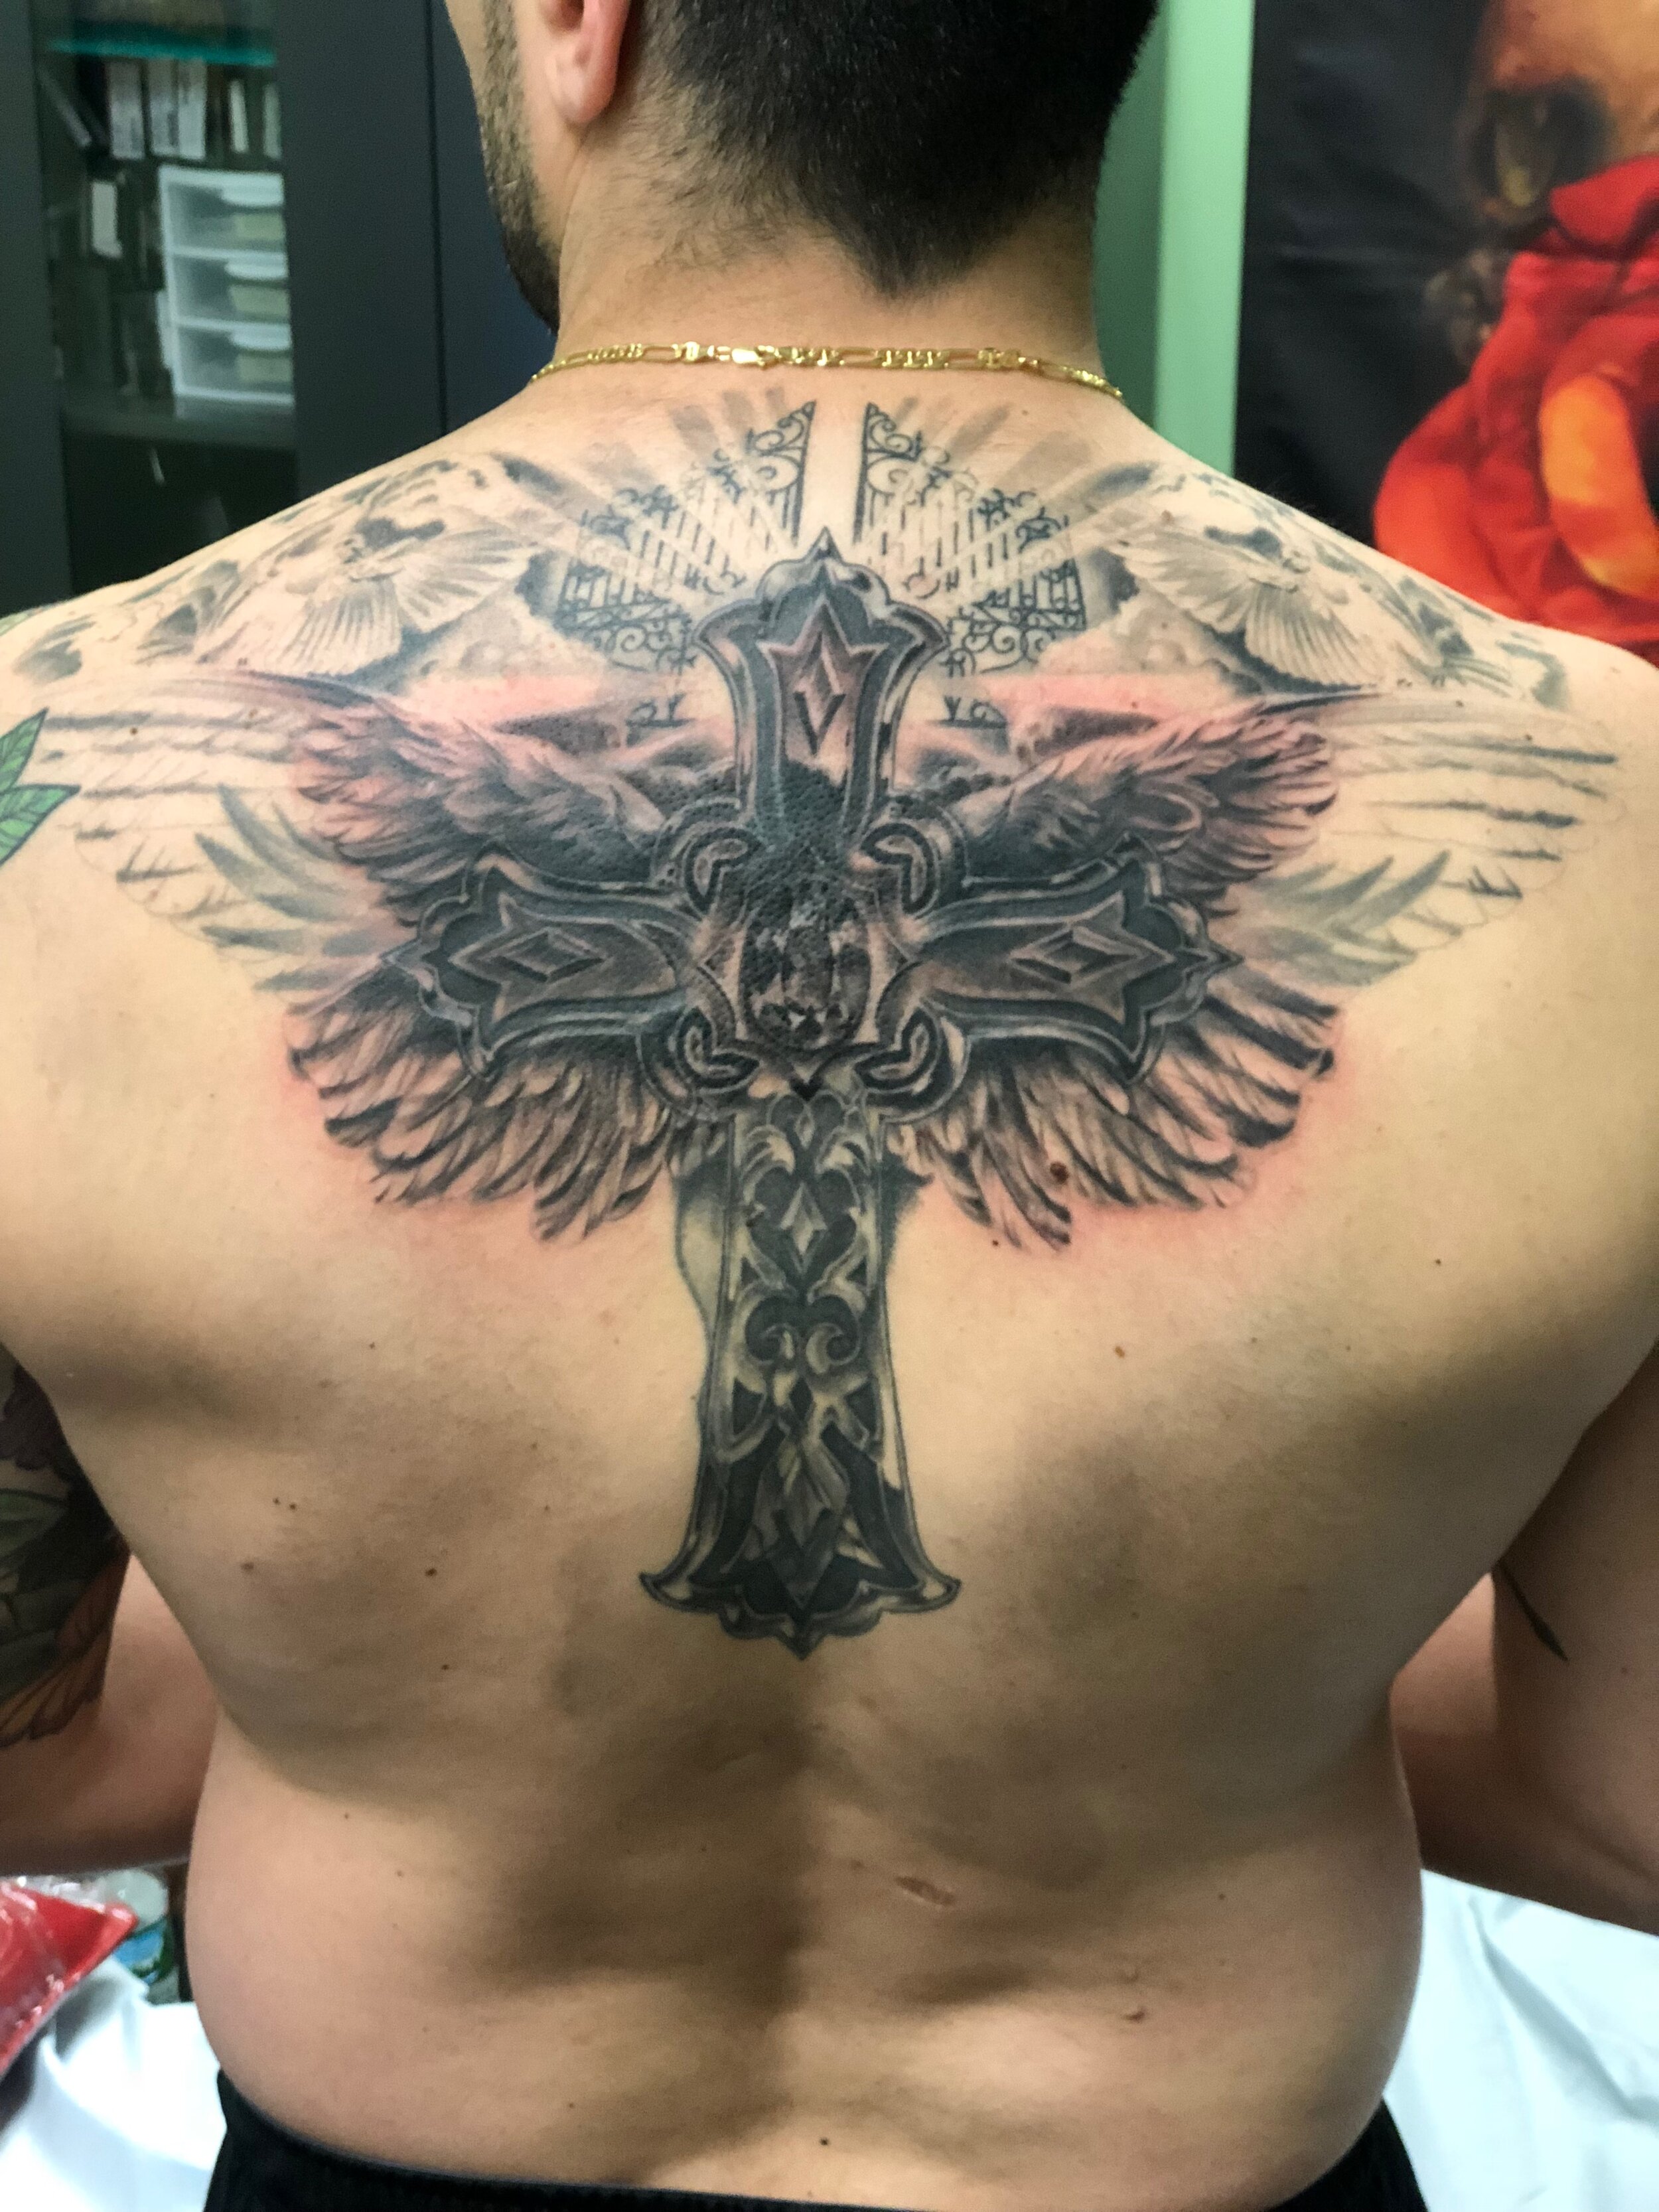 RyanThompsonTattoos_blackandgray_back_tattoo_cross_religious_angel_wings_doves-006.jpg